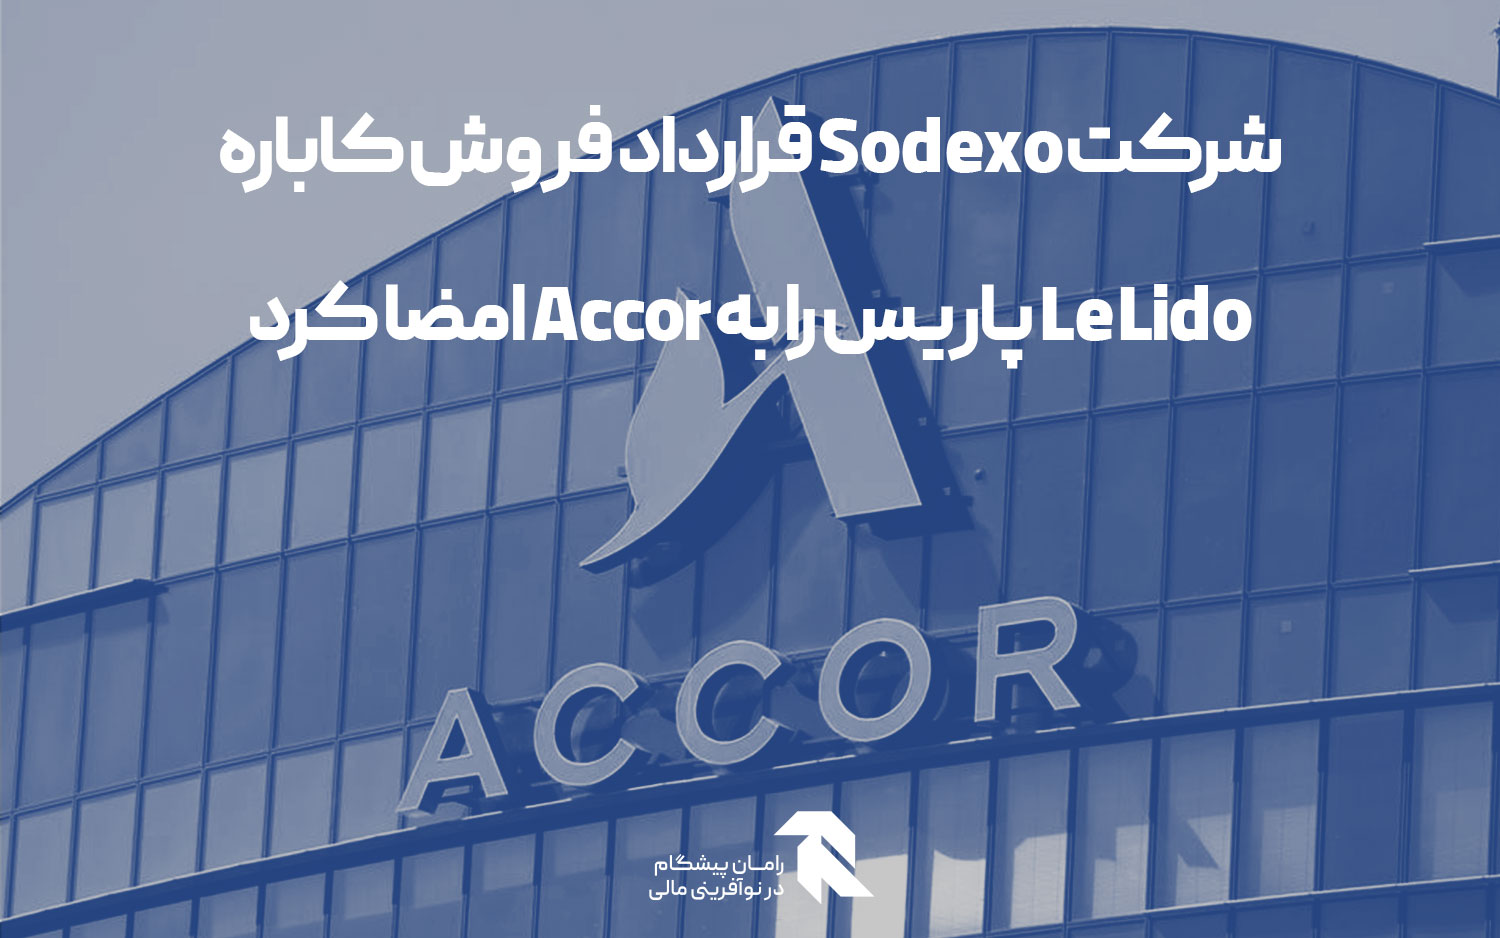 شرکت Sodexo قرارداد فروش کاباره Le Lido پاریس را به Accor امضا کرد